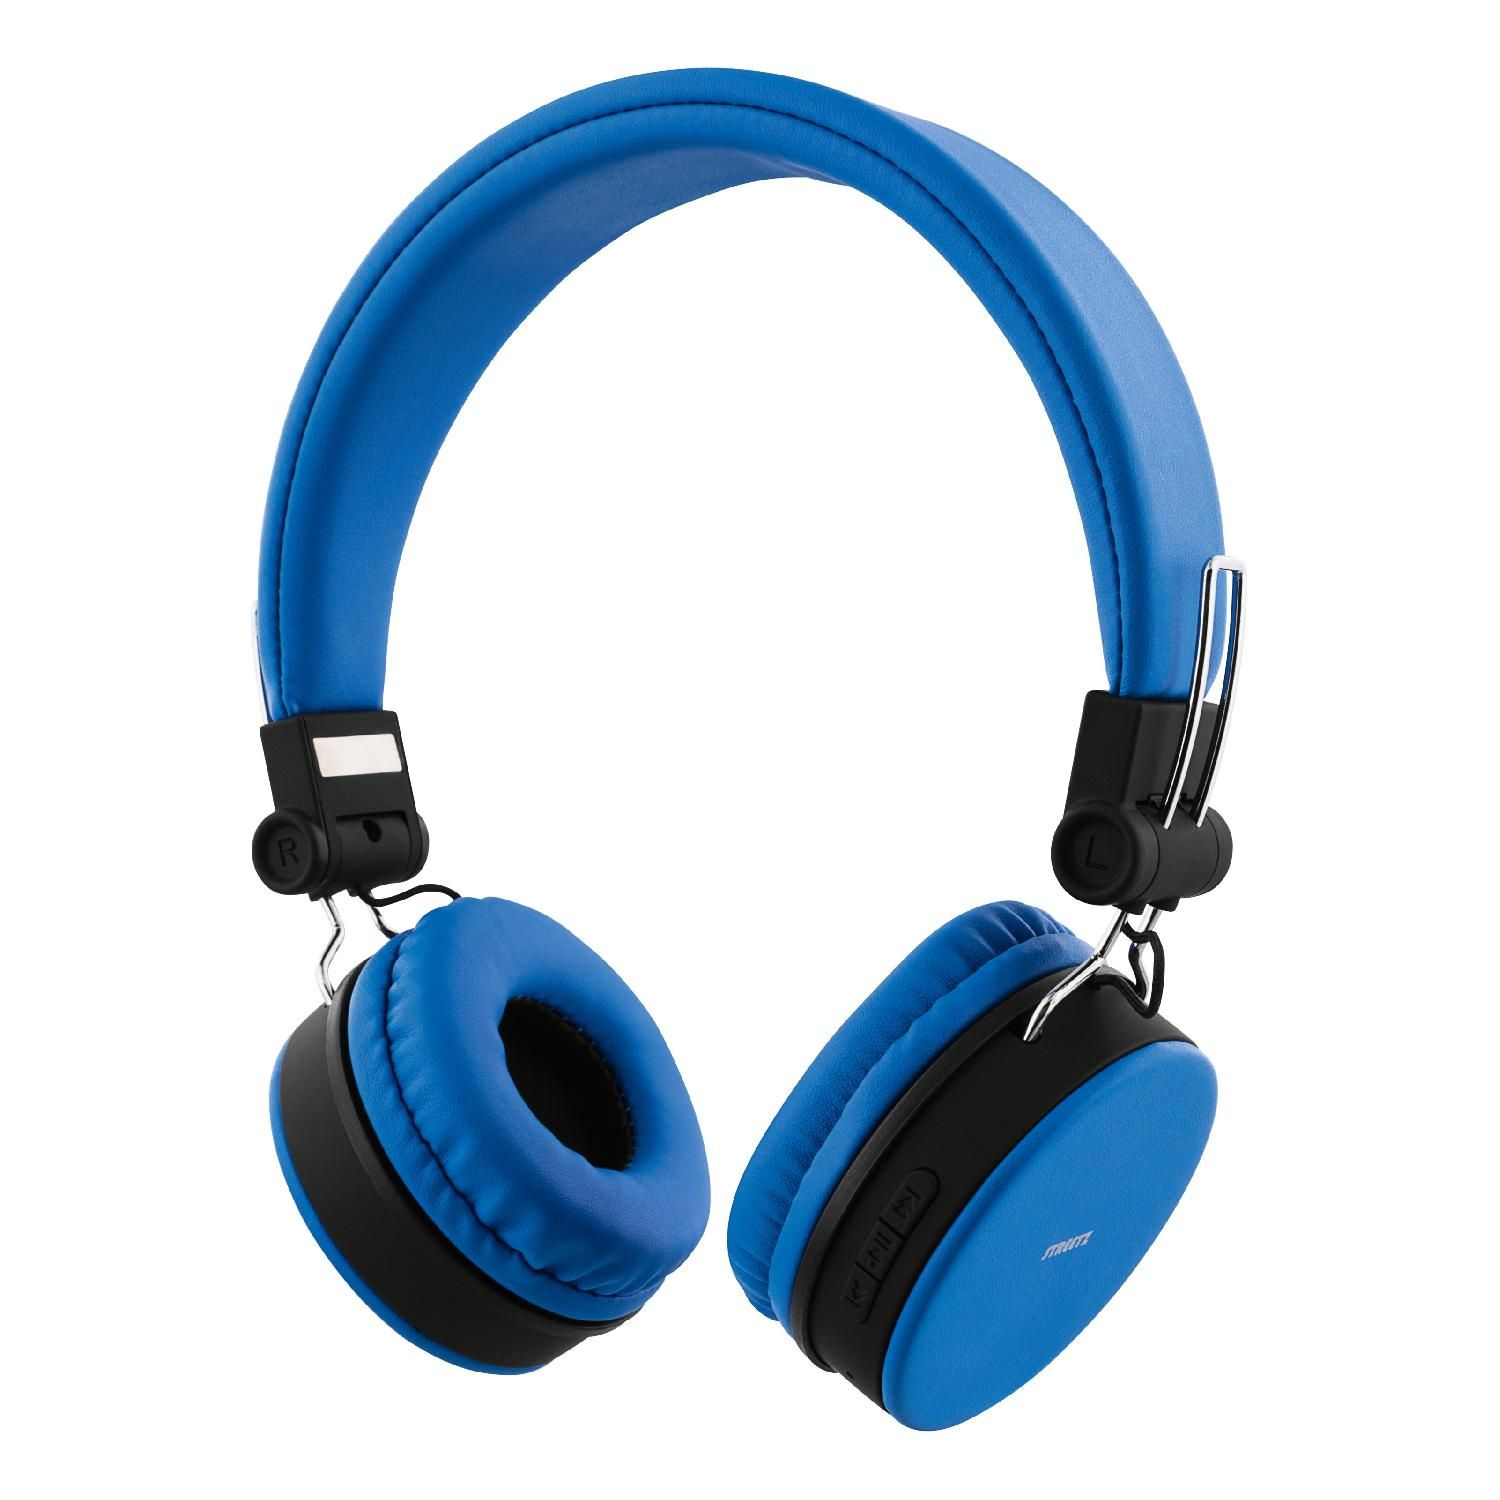 STREETZ Bluetooth Kopfhörer, faltbar, Over-ear Kopfhörer blau